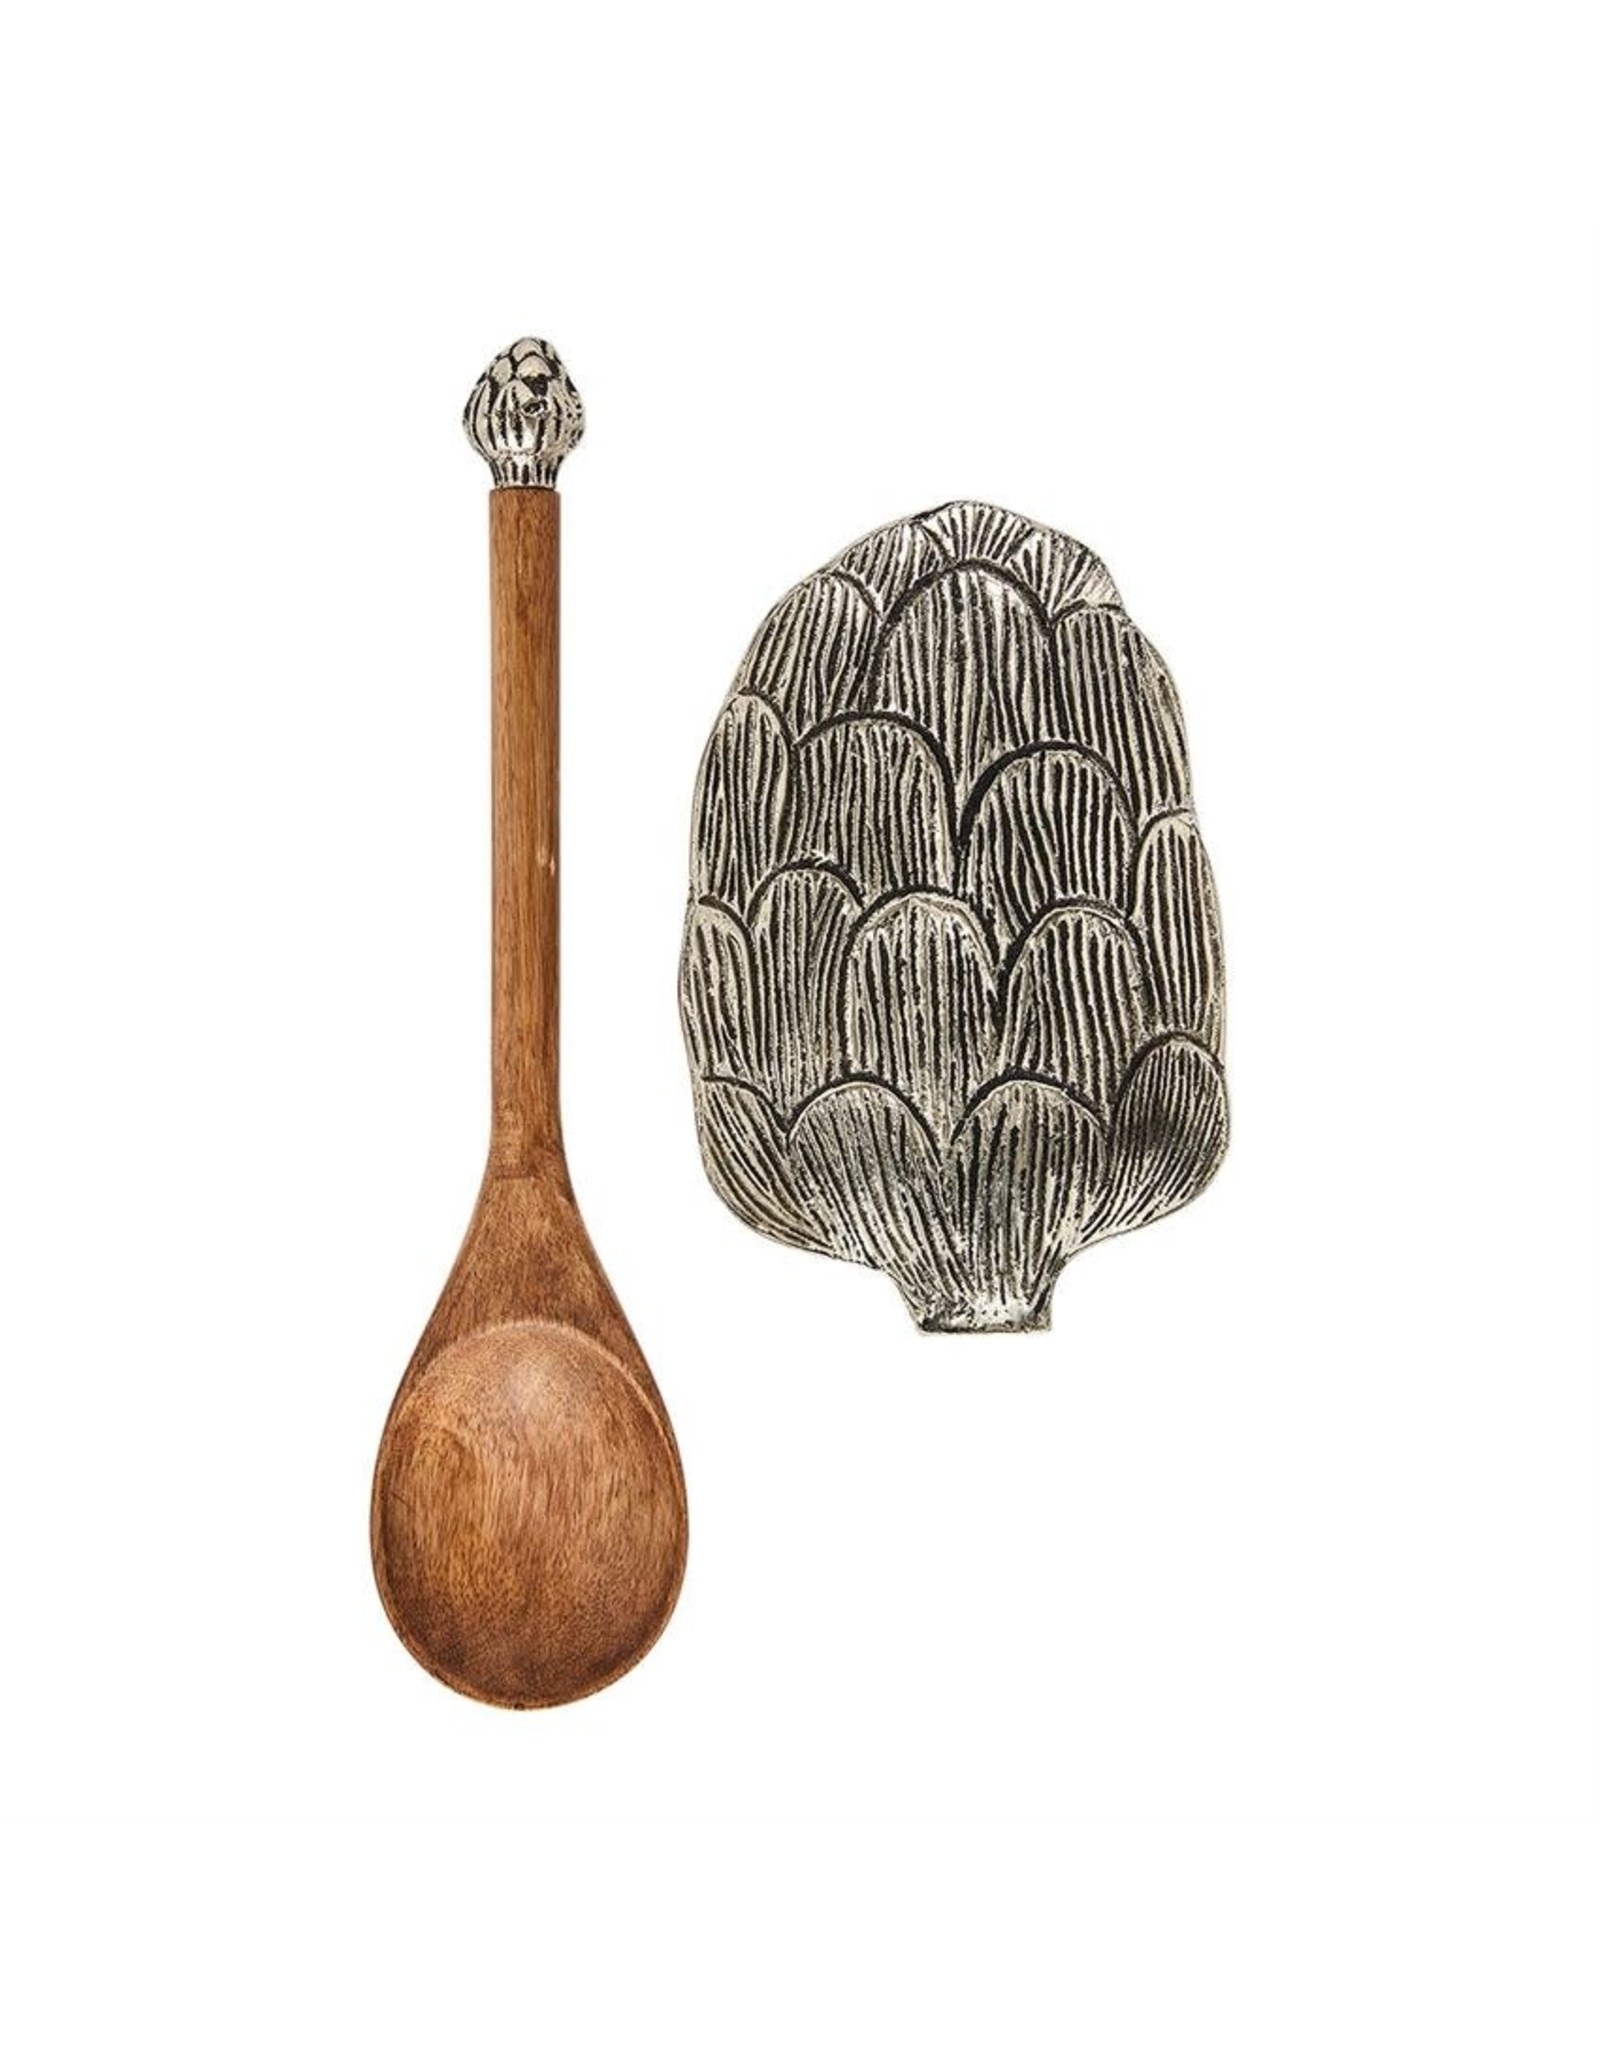 https://cdn.shoplightspeed.com/shops/633980/files/29730644/1600x2048x2/mud-pie-artichoke-spoon-rest-set-with-wooden-spoon.jpg